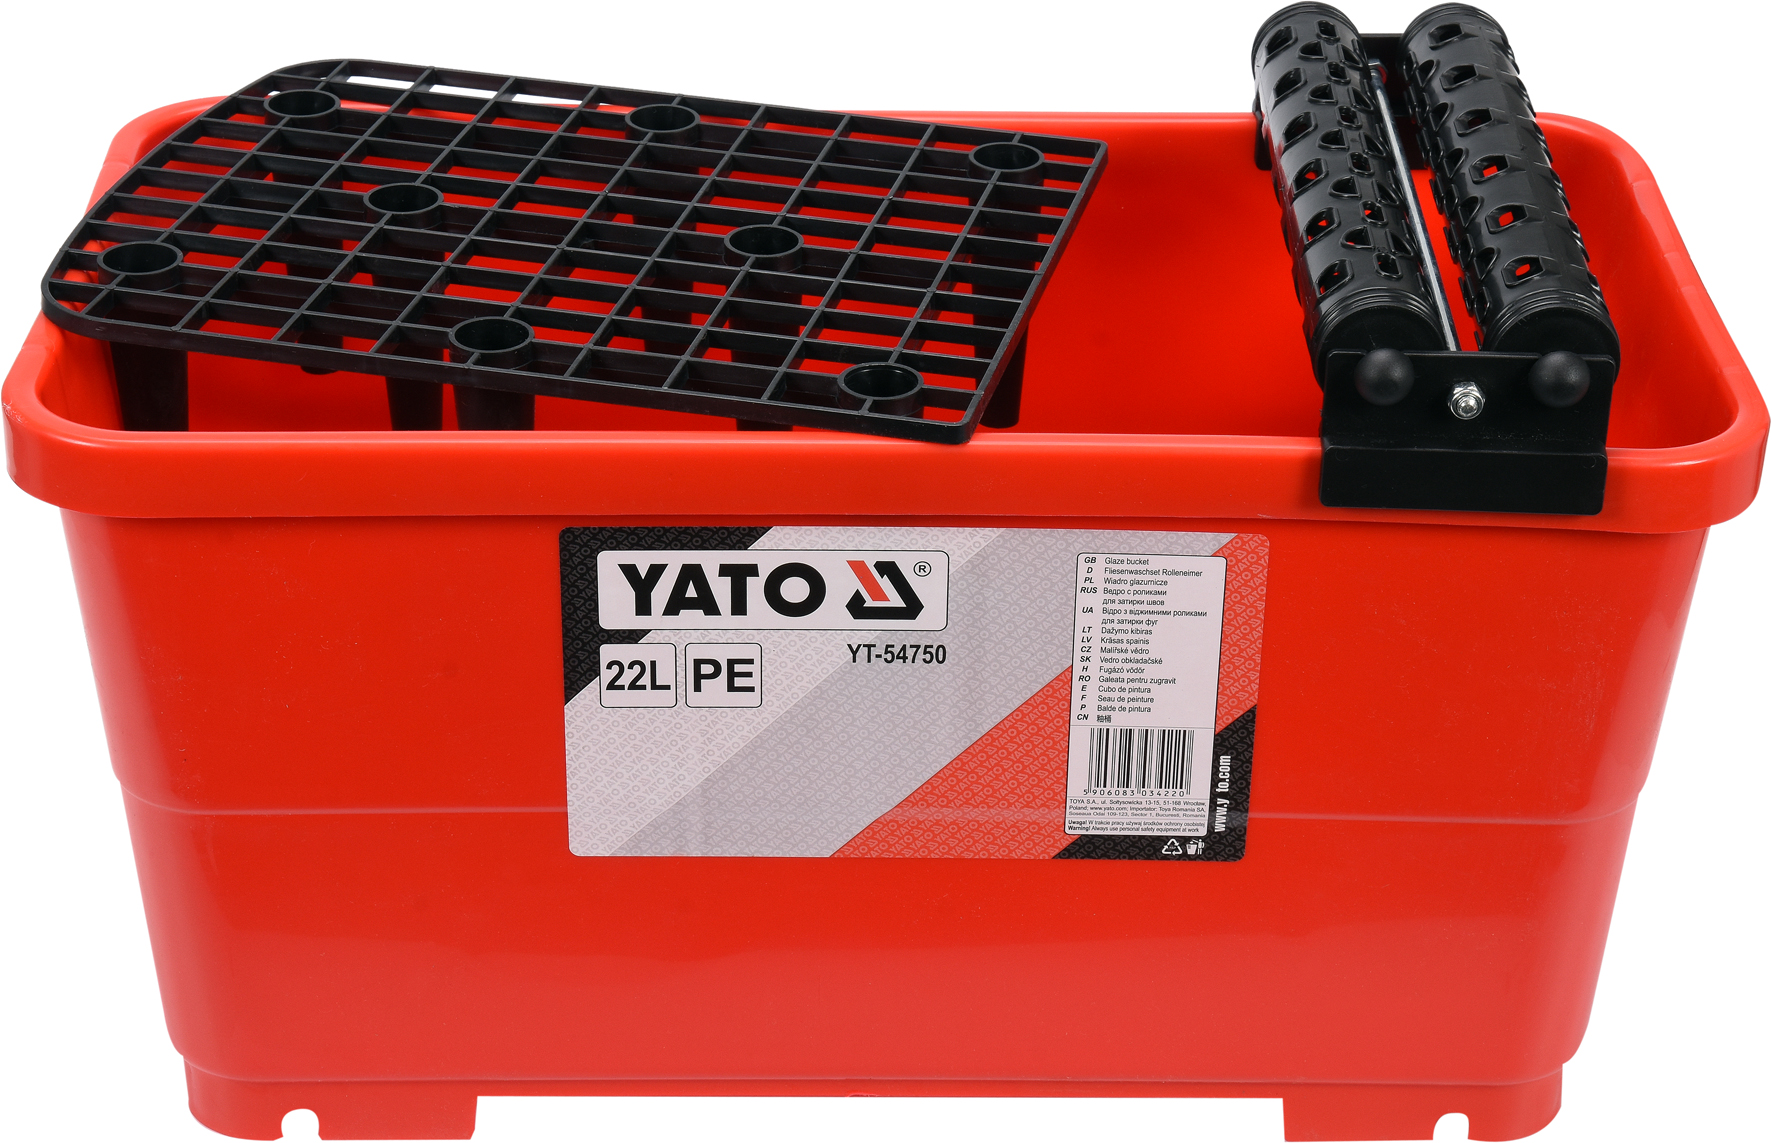 Відро пластикове Yato з валами і решіткою, 22л, для плиточних робіт